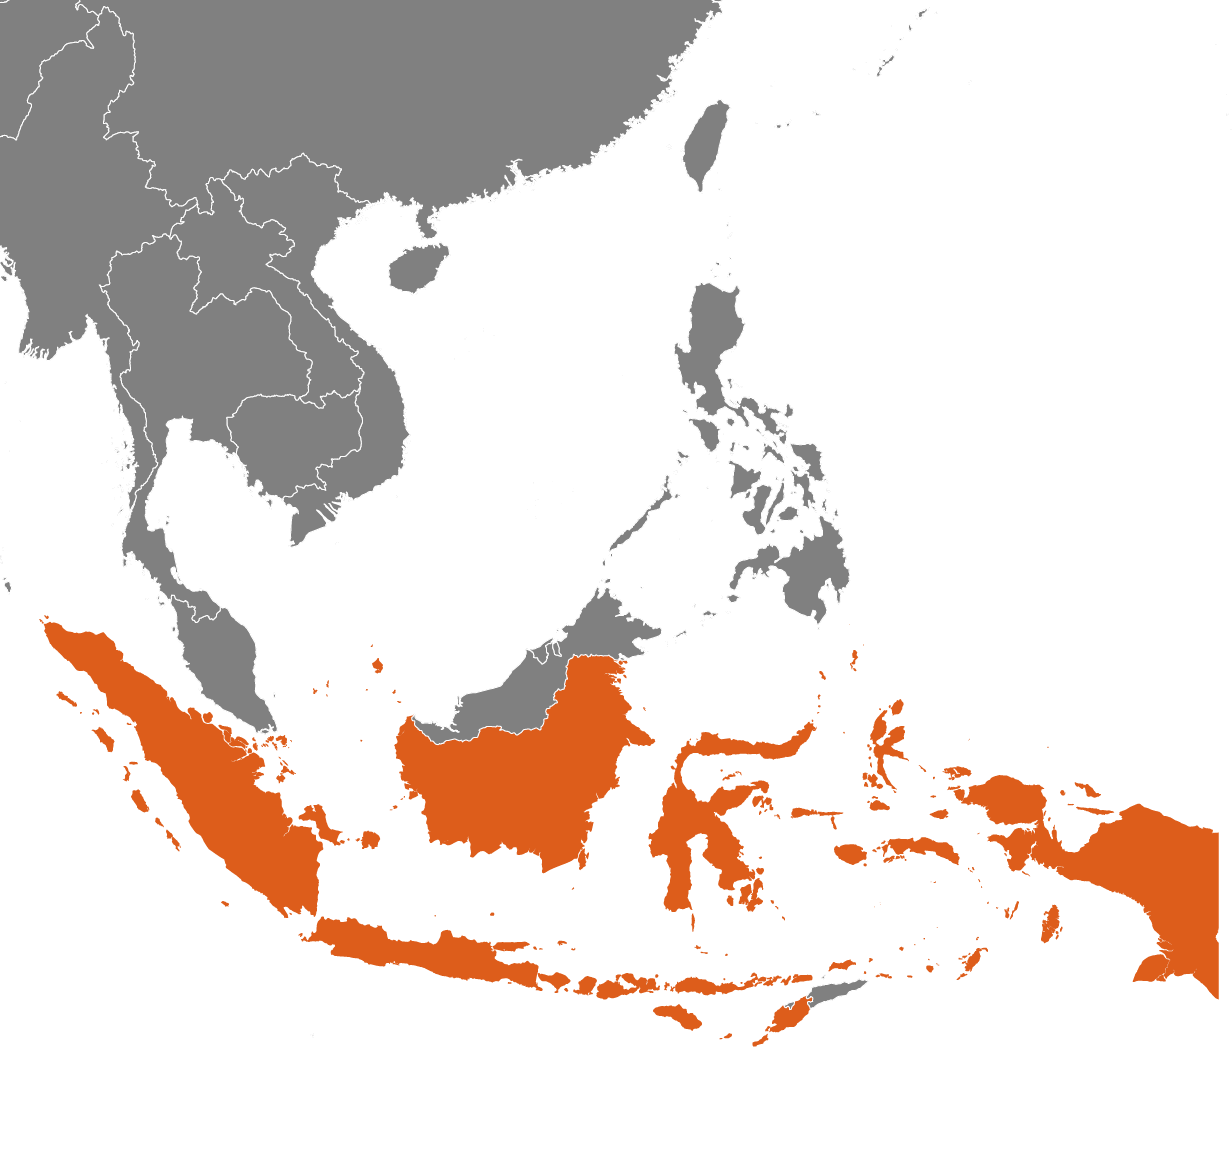 Indonesien på kartan